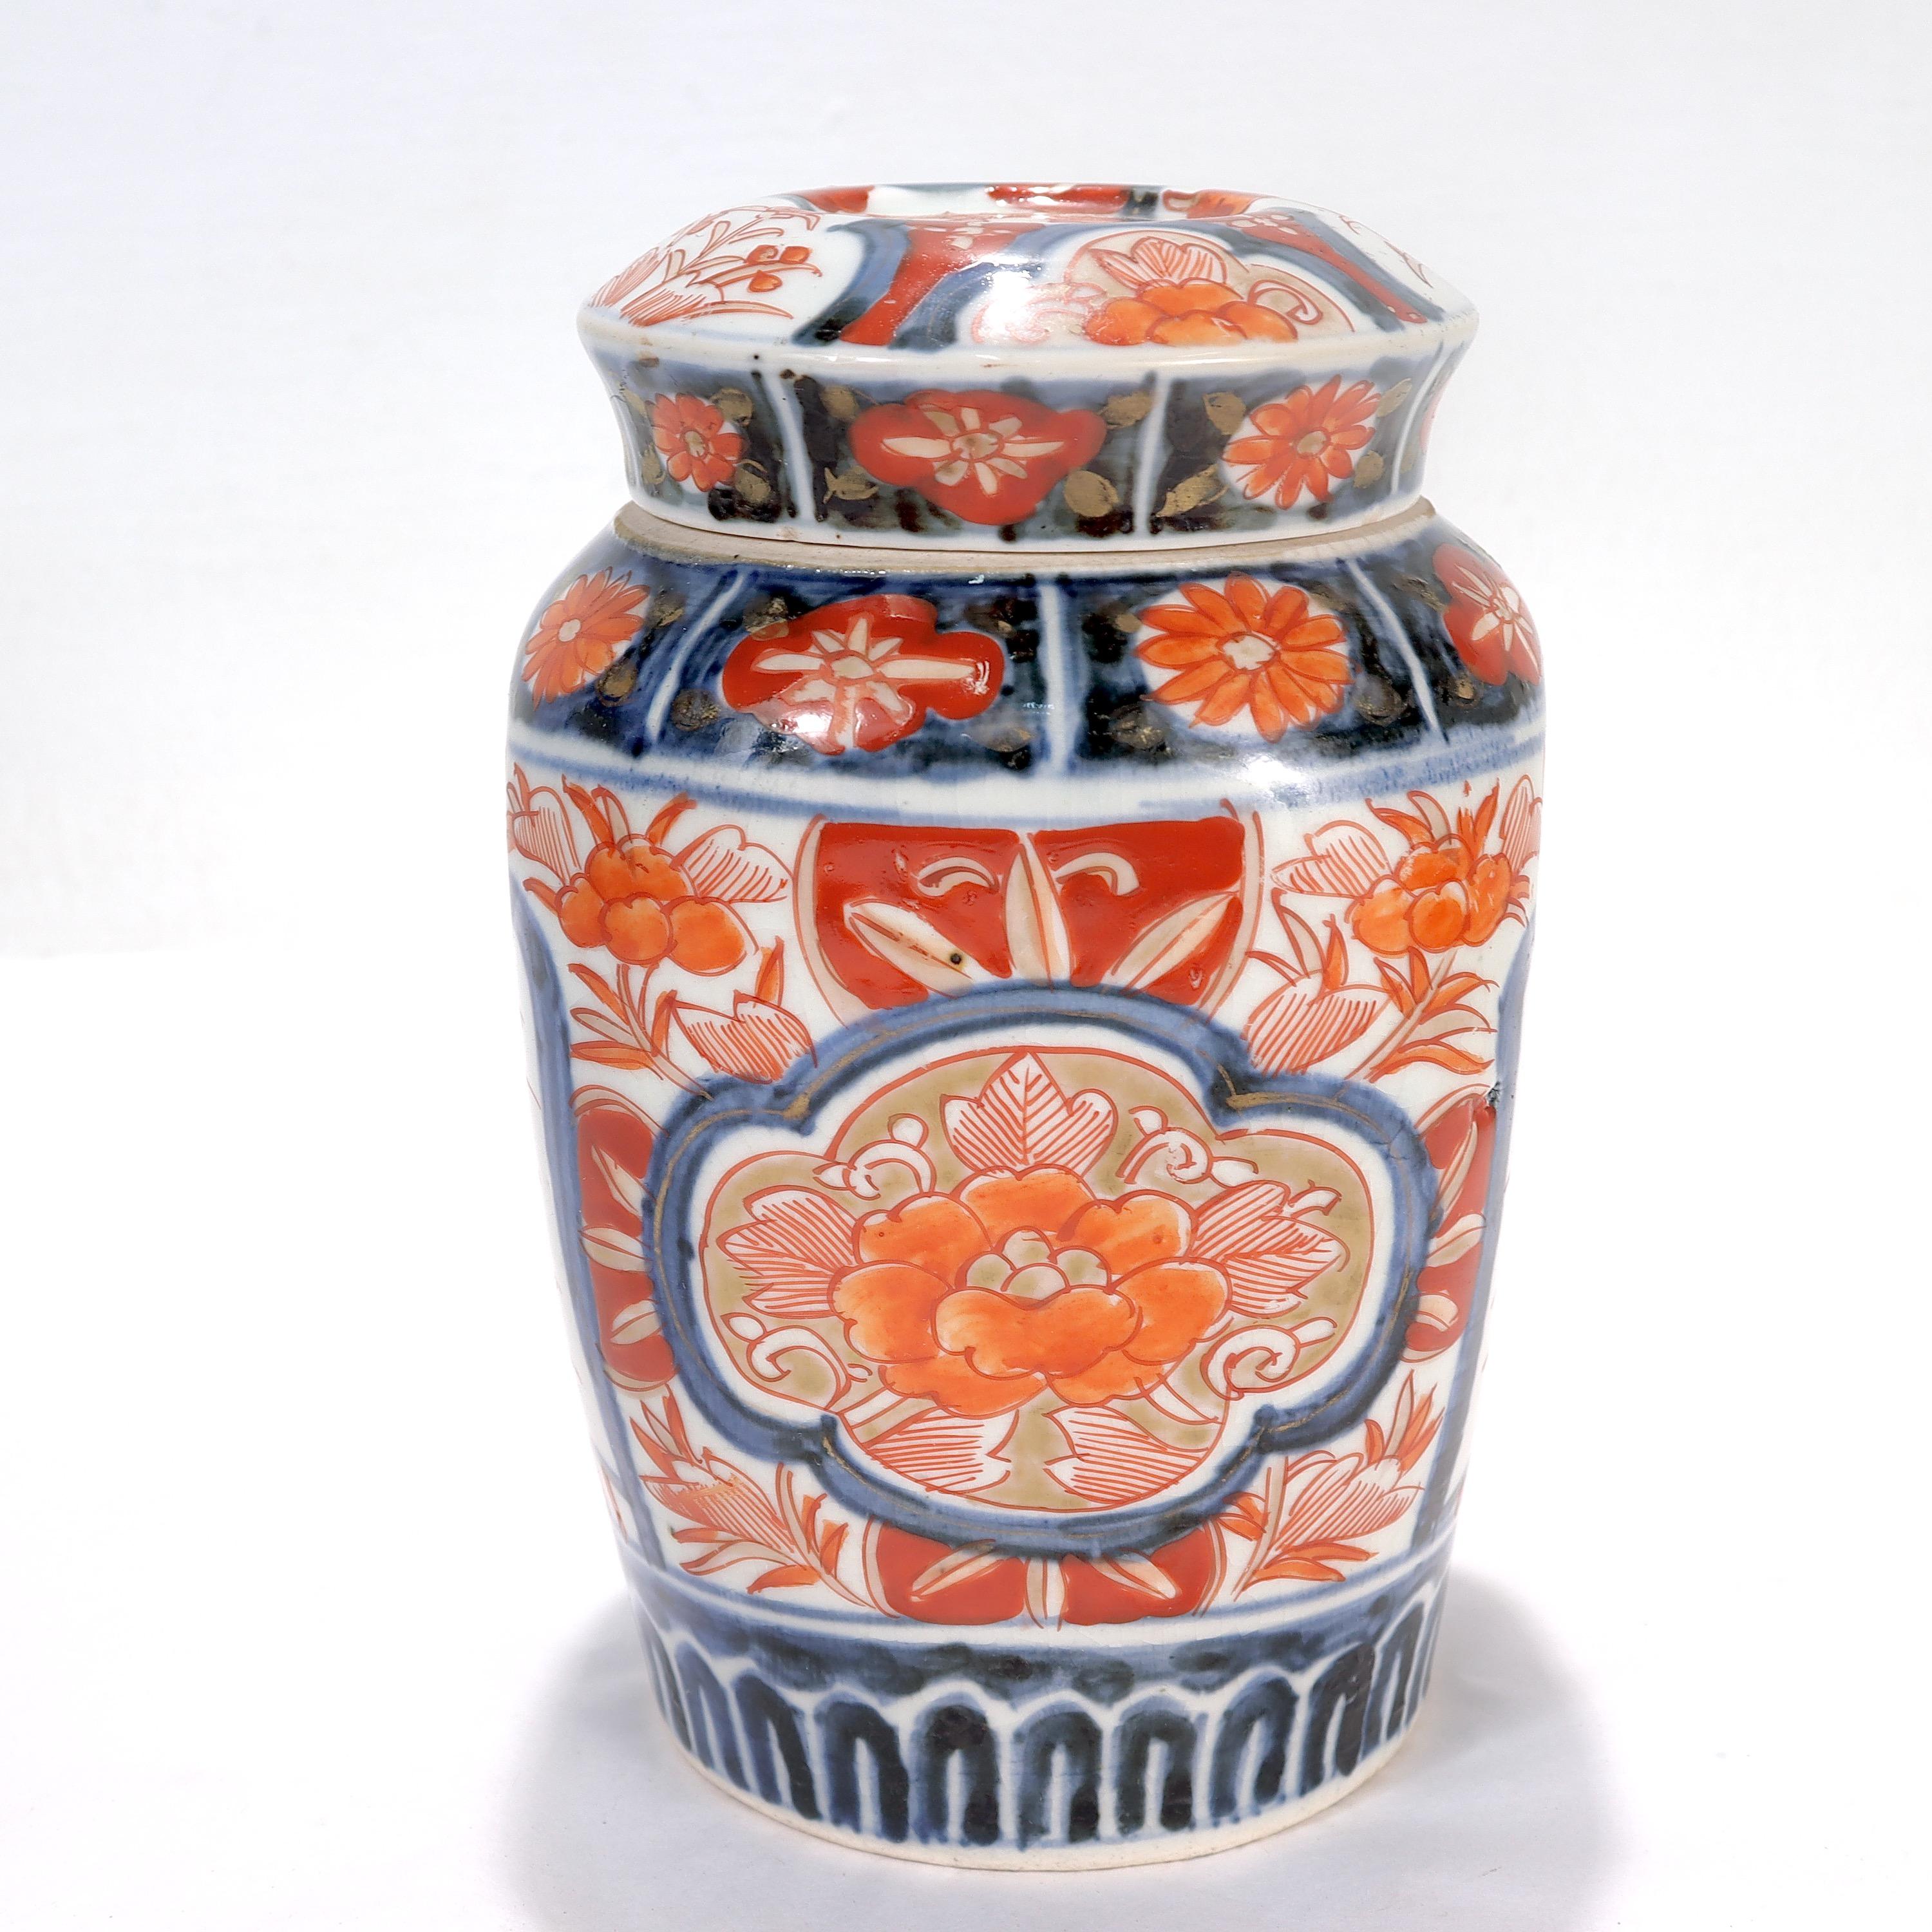 Eine feine japanische Imari-Porzellan-Deckelkanne oder Urne.

Durchgehend mit gemalten roten Blumenornamenten mit blauer Unterglasur und vergoldeten Highlights auf weißem Grund verziert.

Einfach ein wunderbares Imari-Porzellangefäß!

Datum:
20.